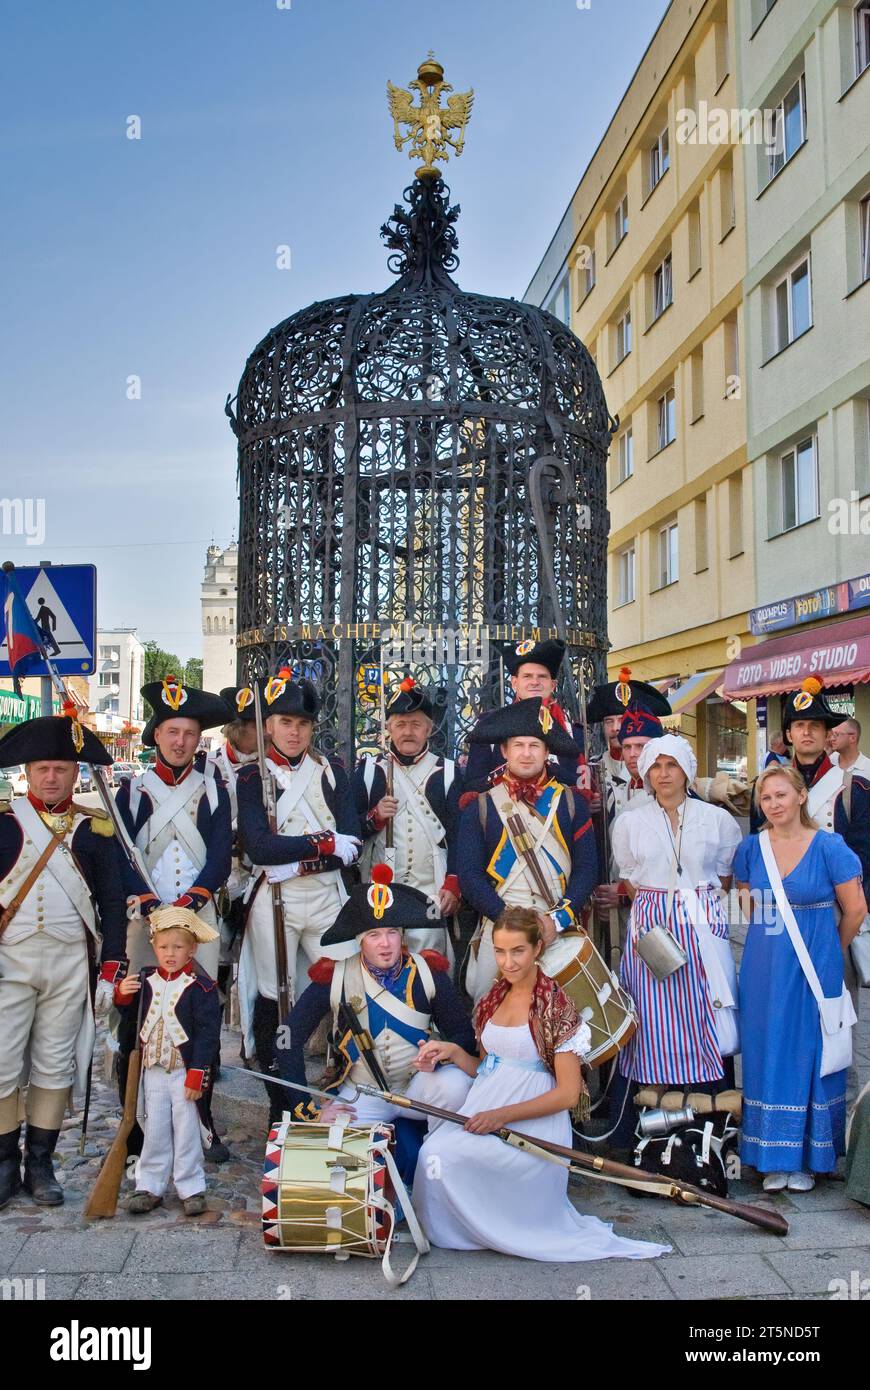 Des repreneurs en uniformes historiques au puits historique avant la reconstitution du siège de Neisse pendant la guerre napoléonienne avec la Prusse en 1807, à Nysa, en Pologne Banque D'Images